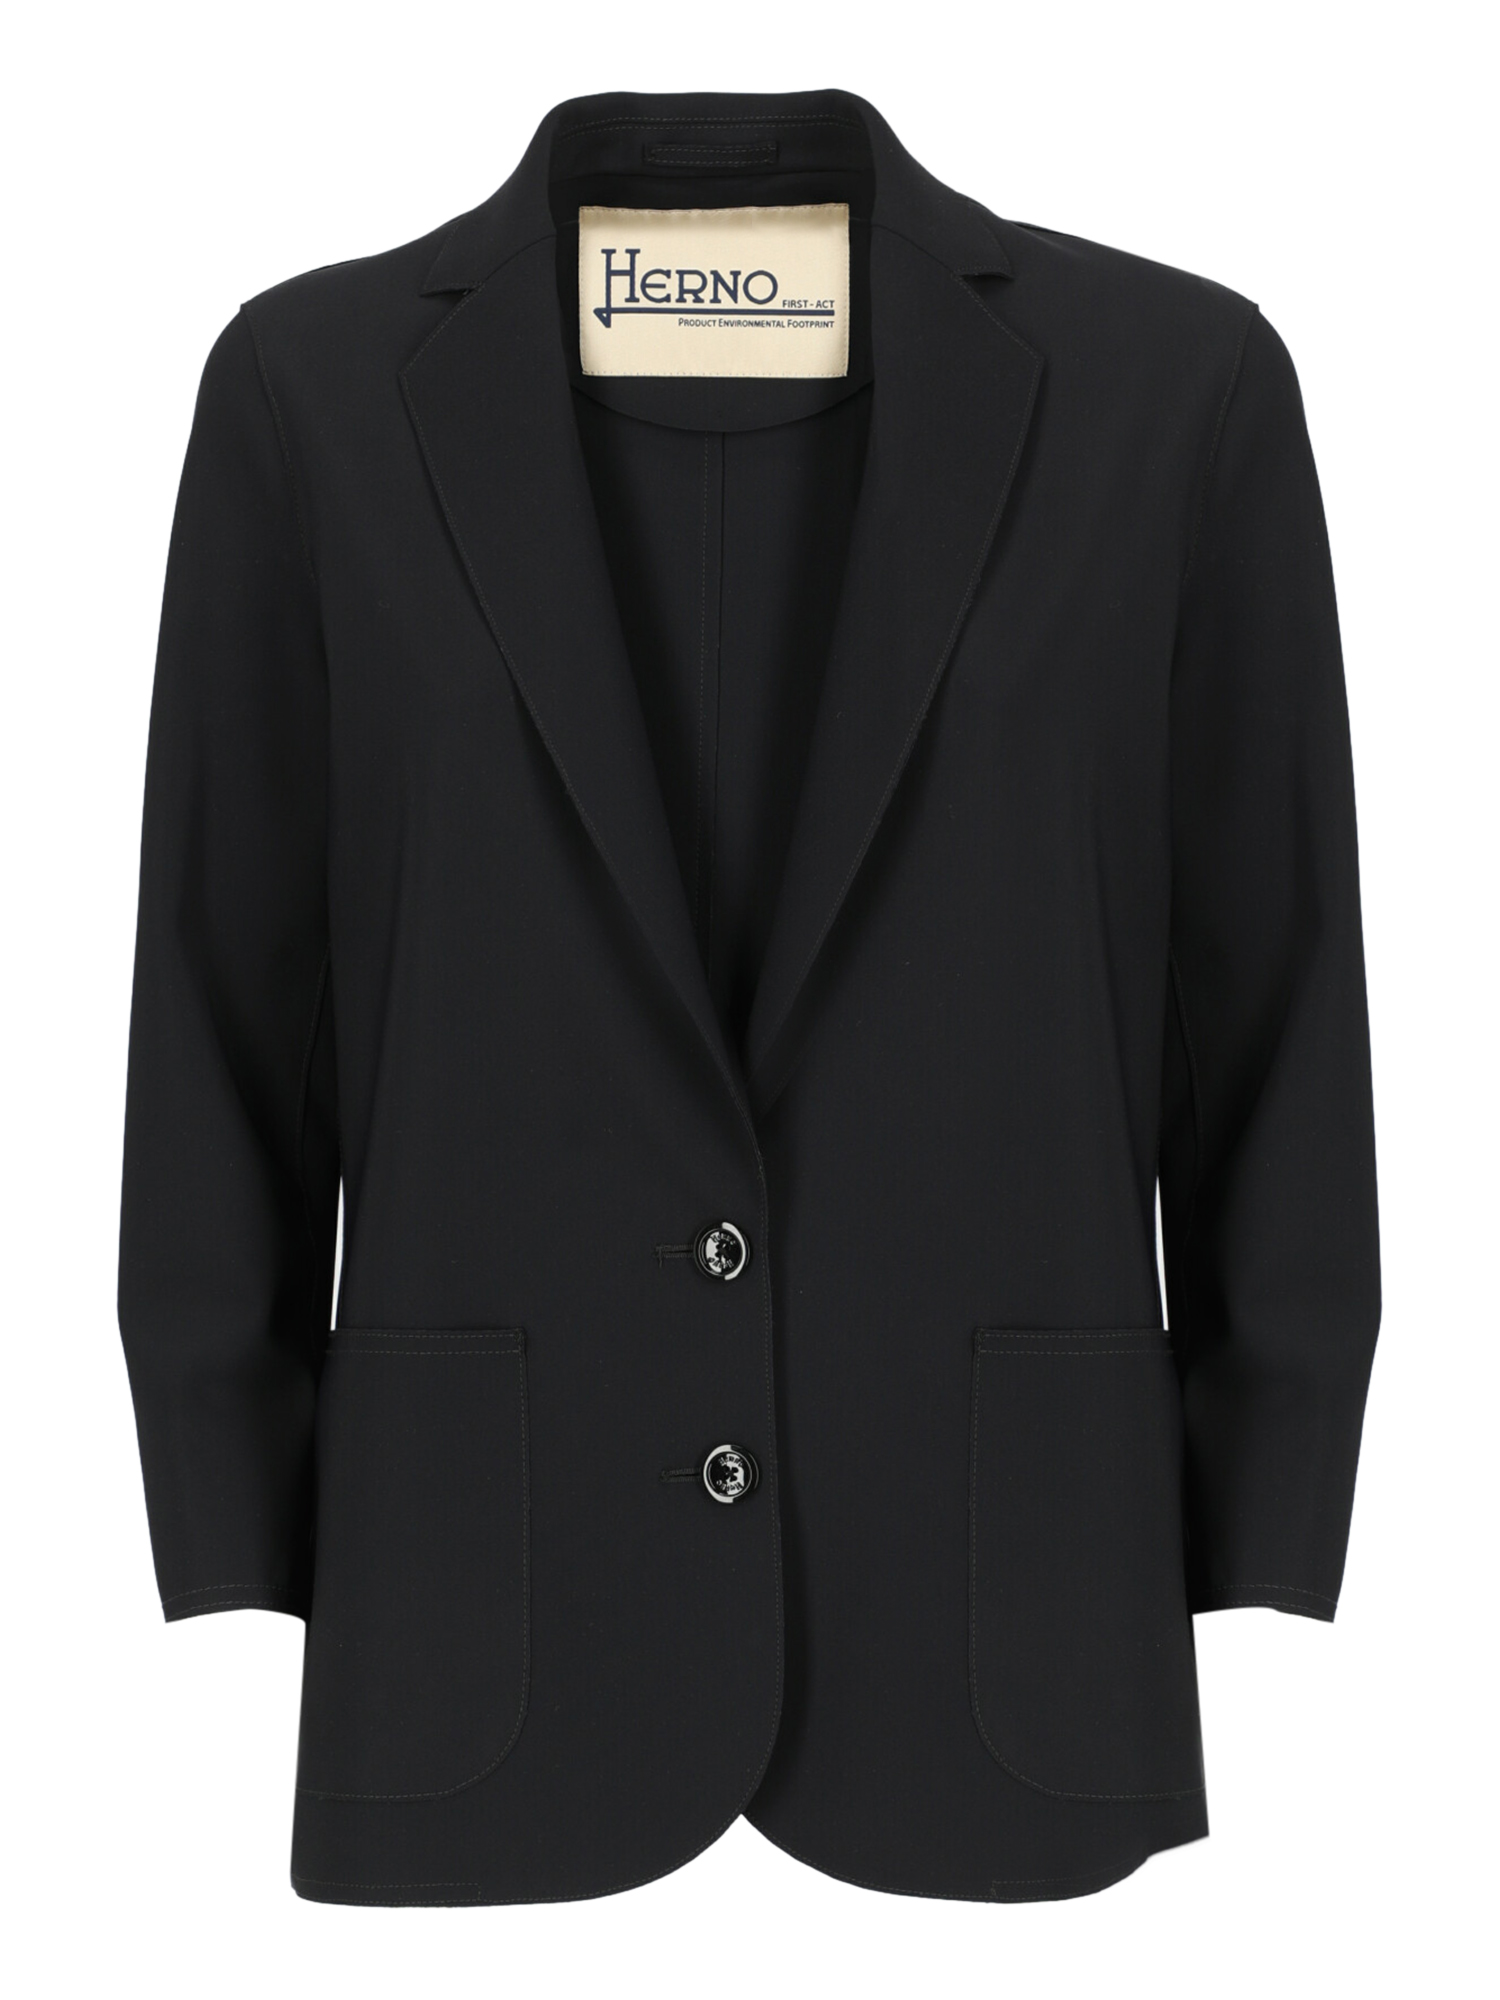 Vestes Pour Femme - Herno - En Fabric Black - Taille:  -